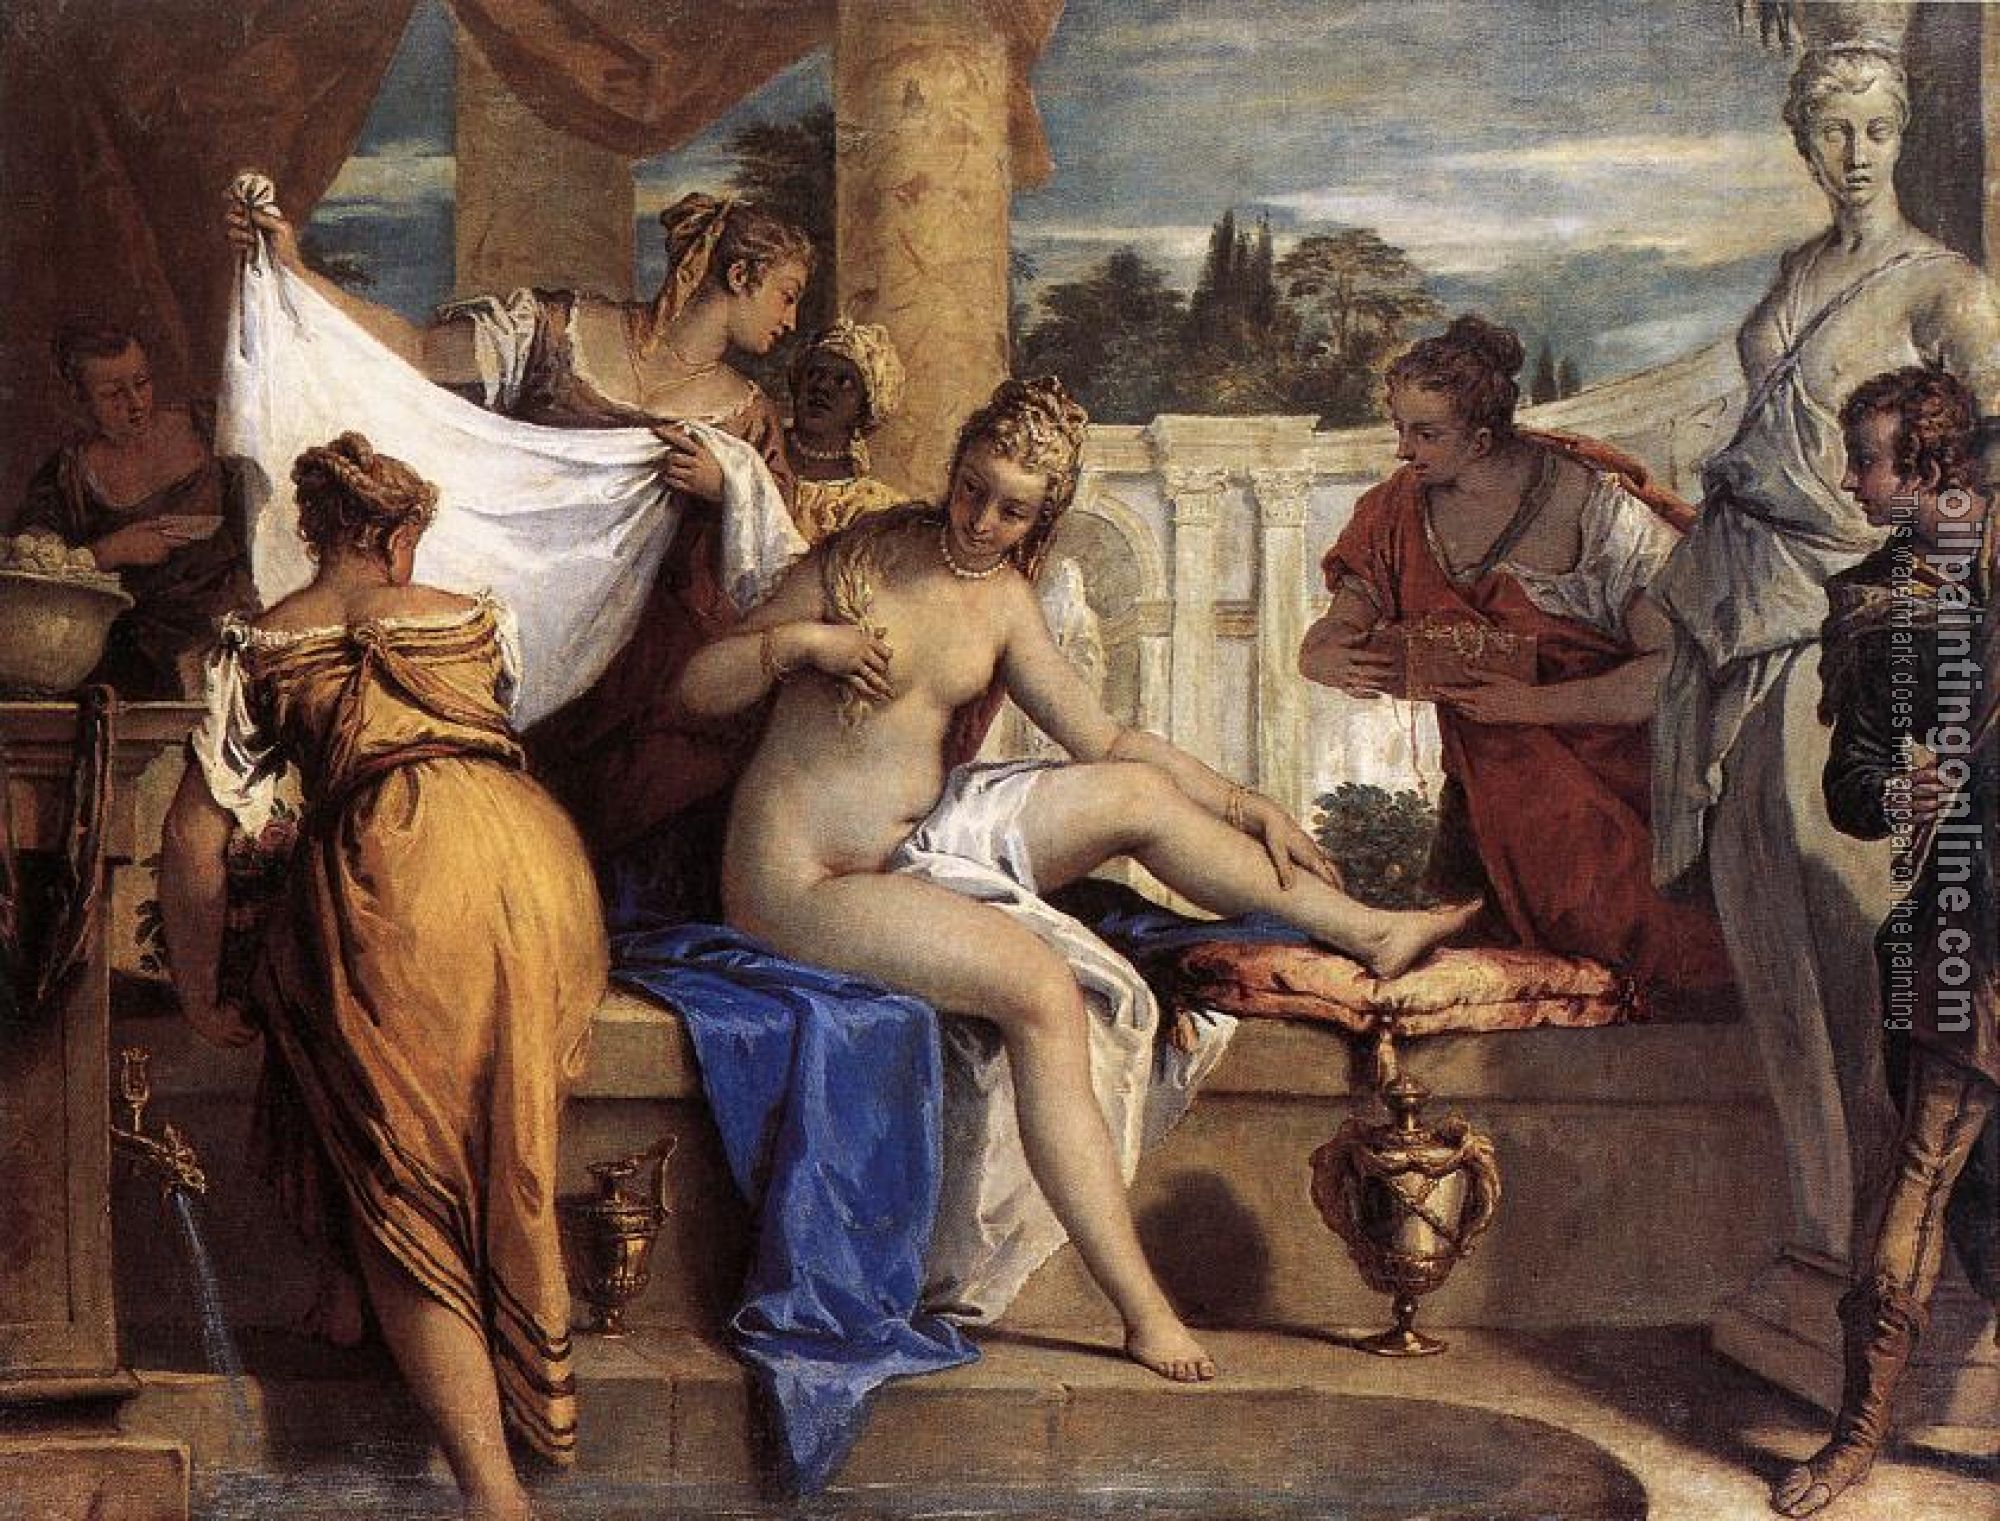 Ricci, Sebastiano - Bathsheba in her Bath